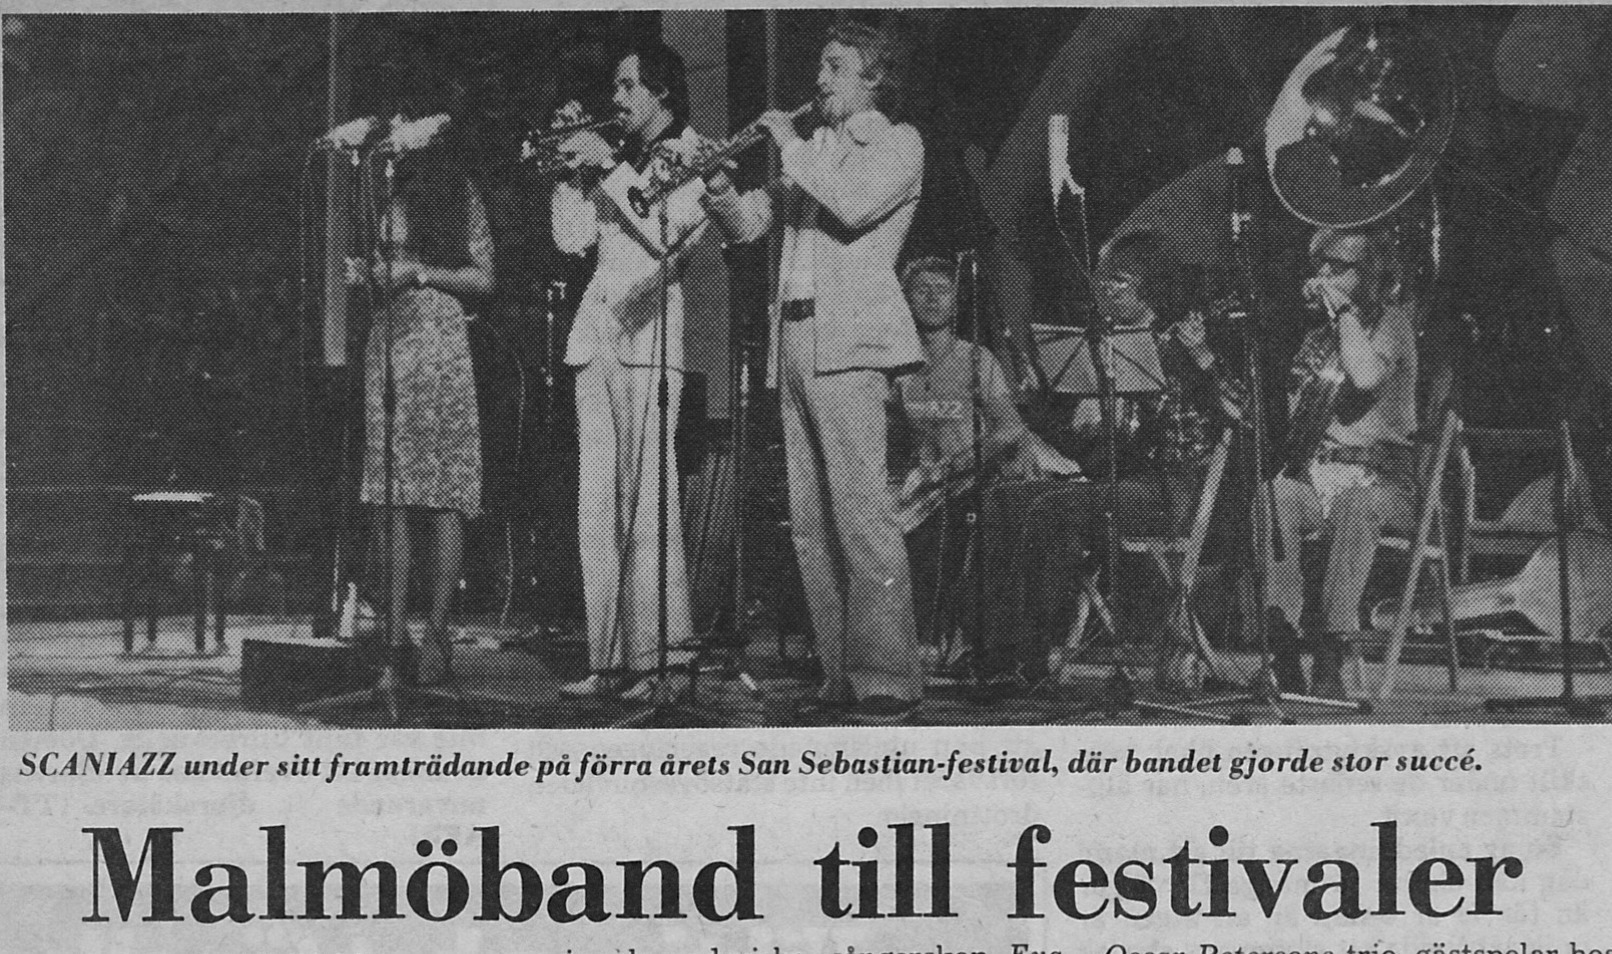 Malmöband till festivaler